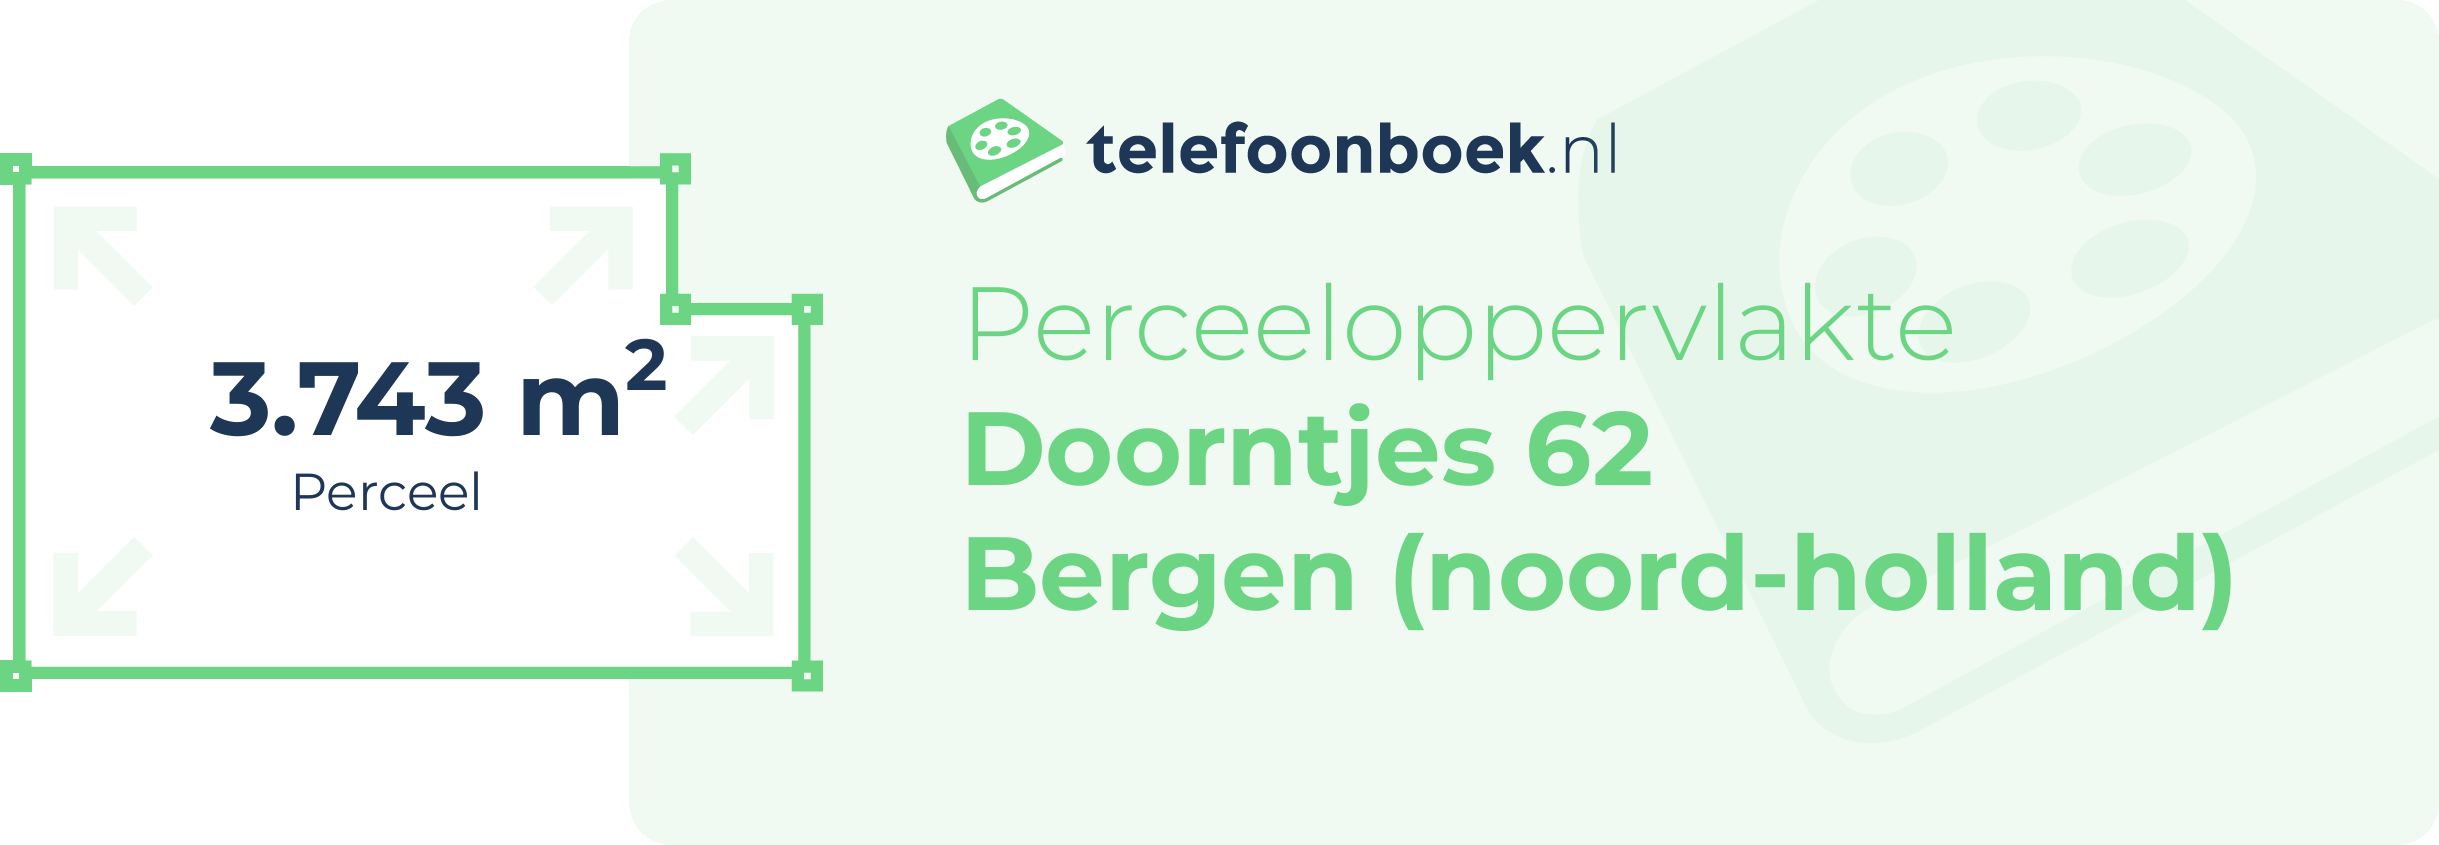 Perceeloppervlakte Doorntjes 62 Bergen (Noord-Holland)